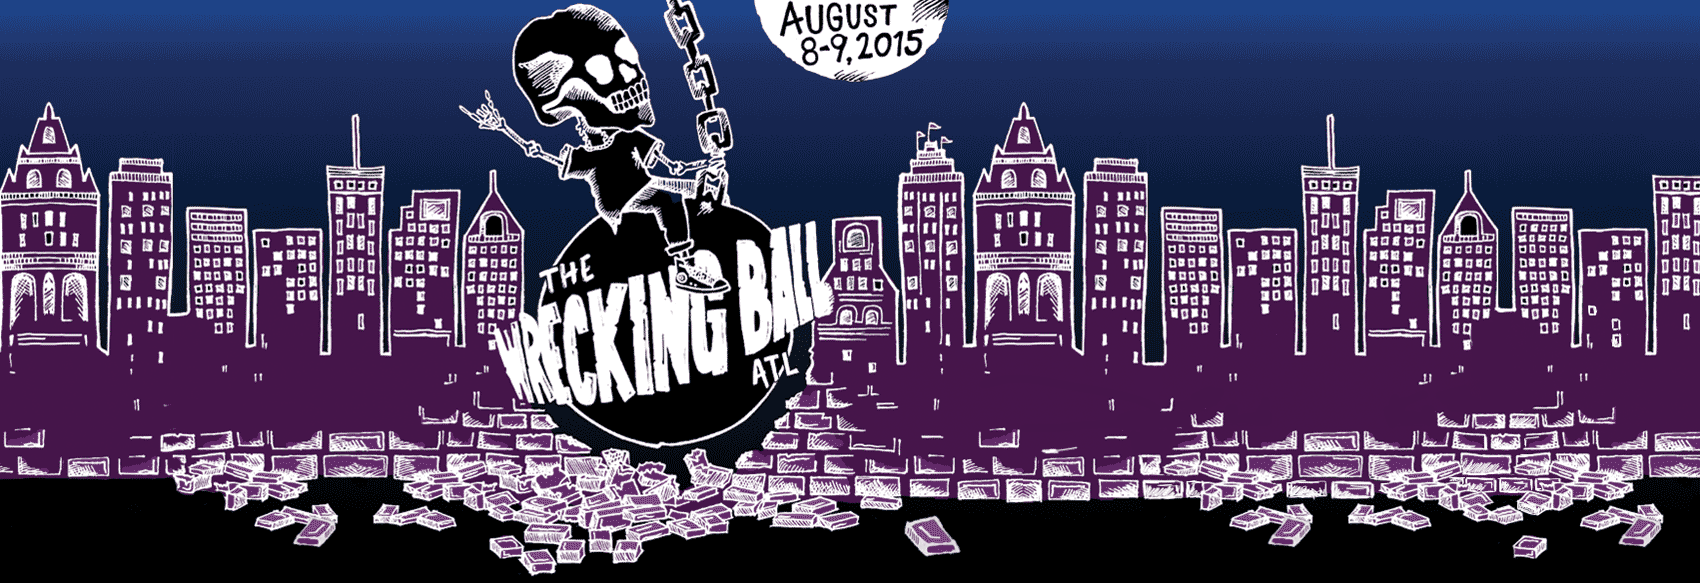 Atlanta wrecking ball festival preview